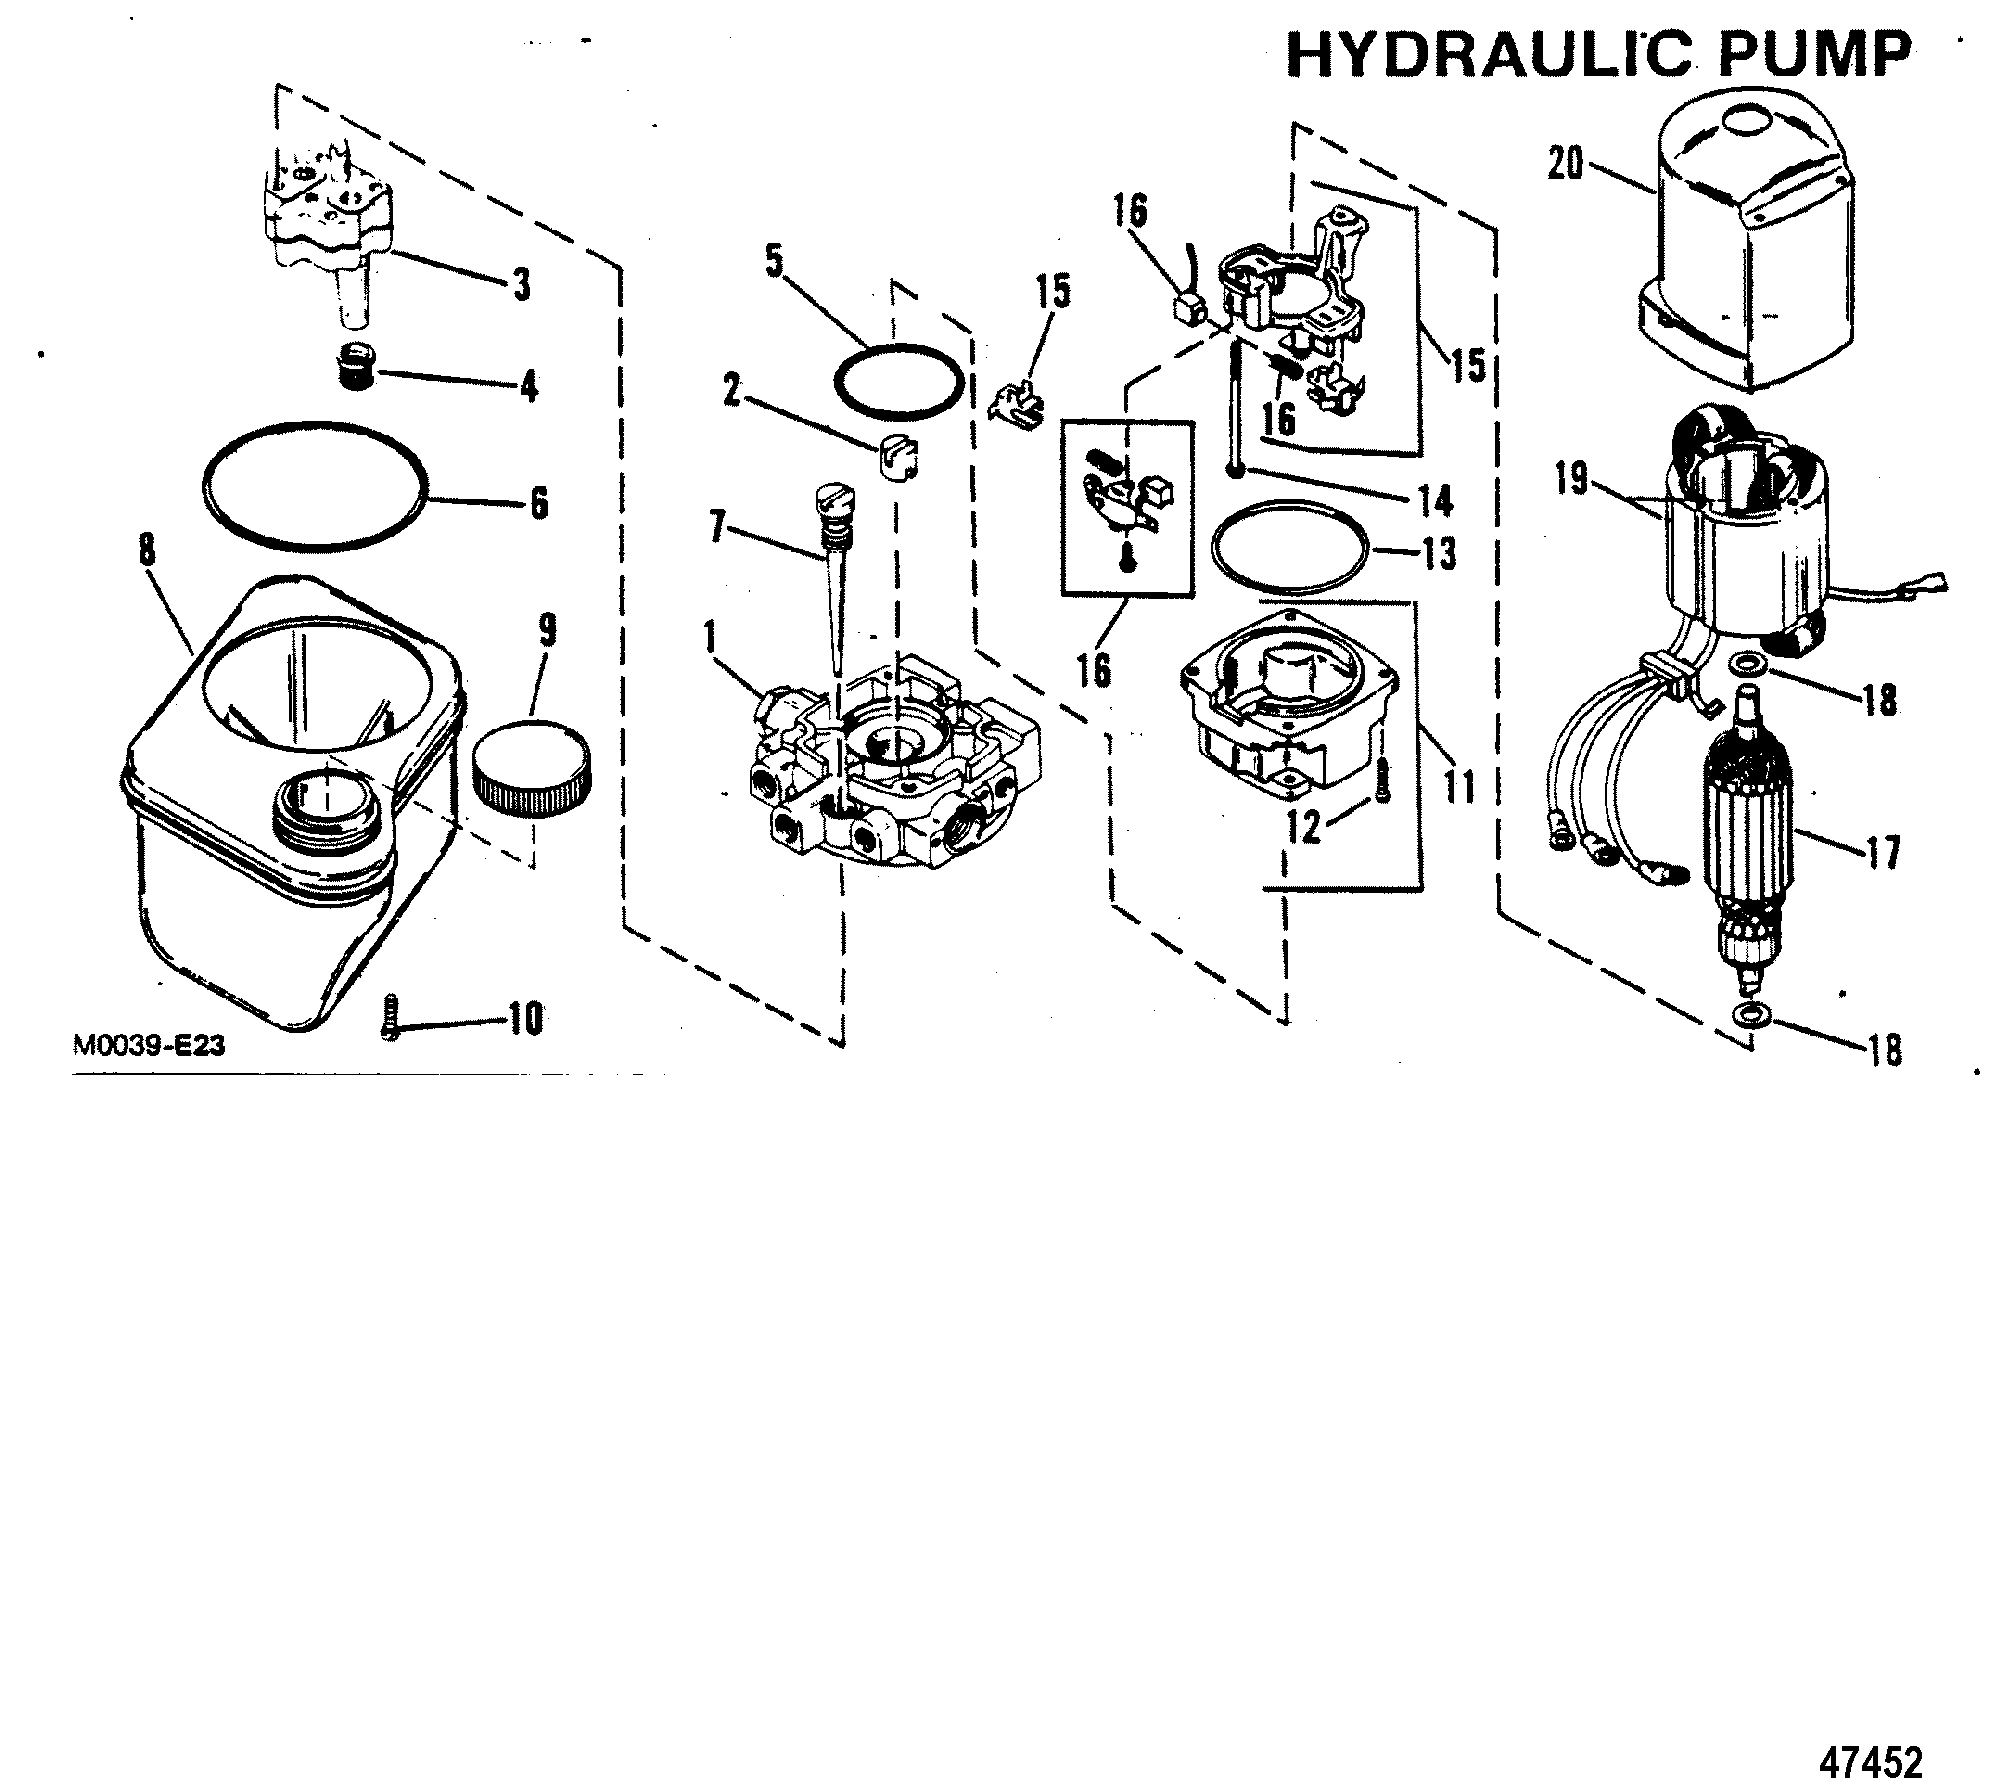 HYDRAULIC PUMP(OILDYNE PUMP PLASTIC RESERVOIR)